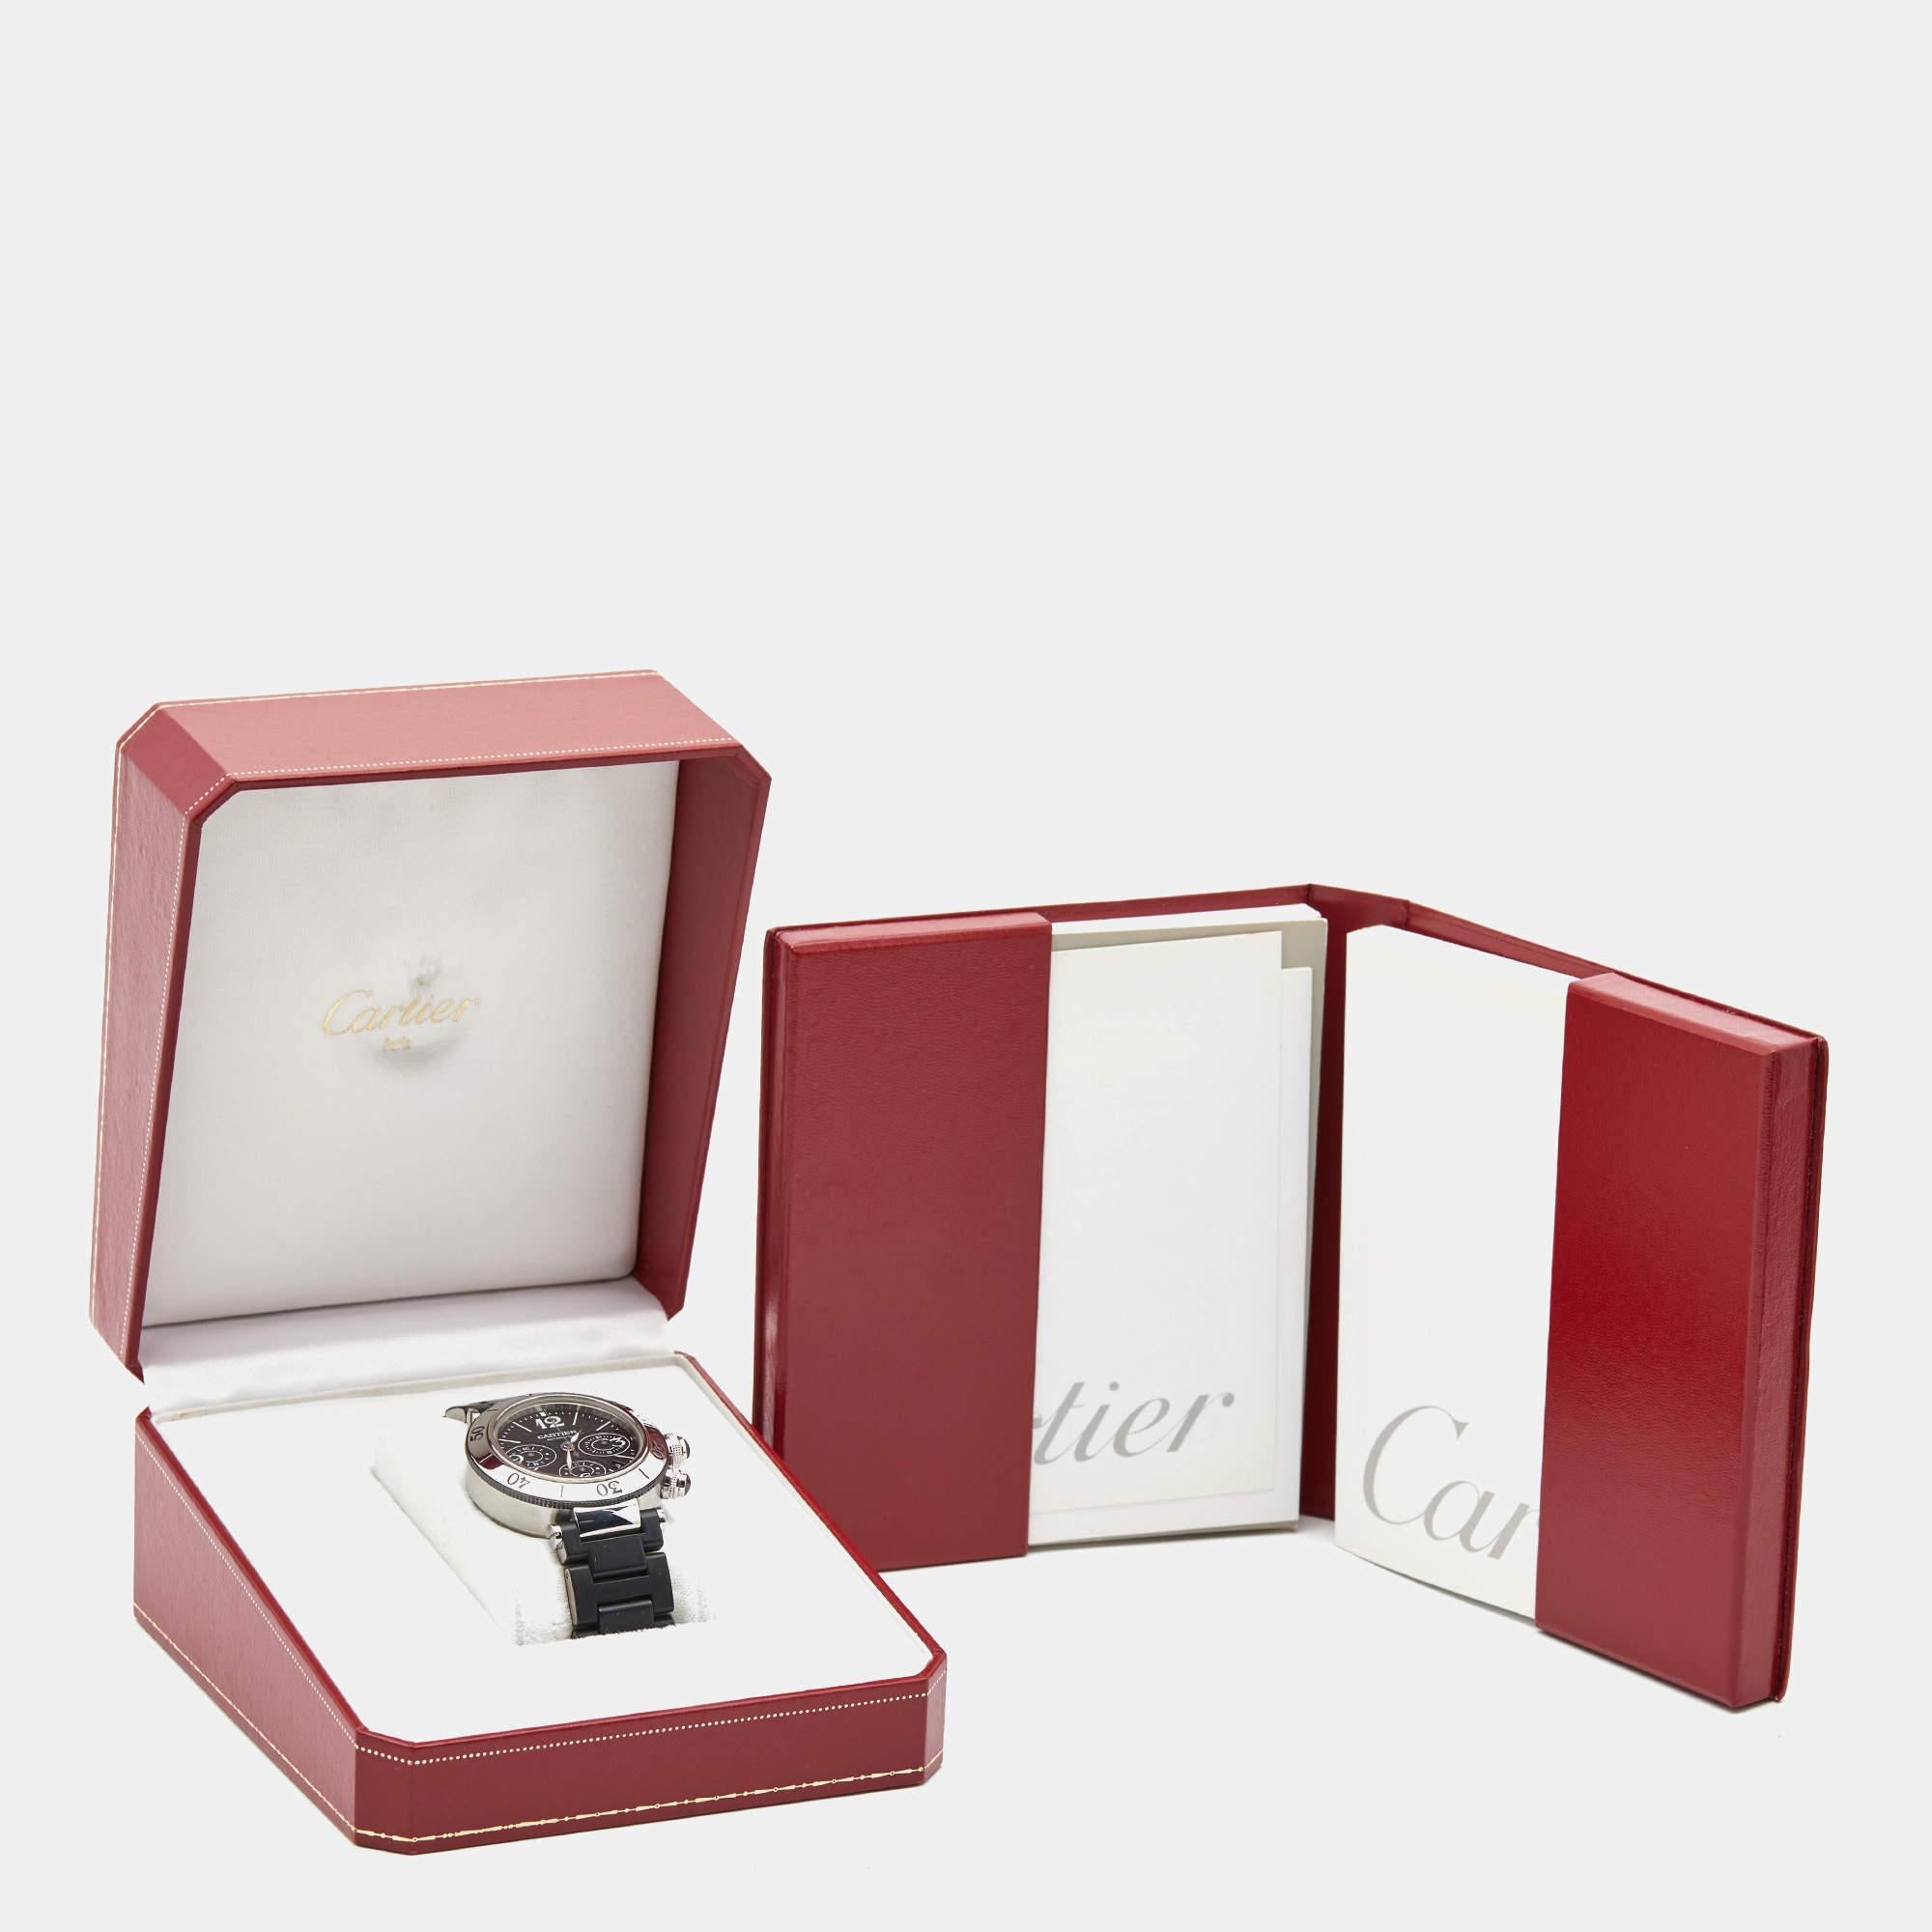 Diese feine Pasha Seatimer Armbanduhr von Cartier begleitet Sie mit Leichtigkeit und luxuriösem Stil. Die Automatikuhr ist aus hochwertigen Materialien gefertigt und zeichnet sich durch Langlebigkeit und Funktionalität aus. Sie hat ein Gehäuse aus